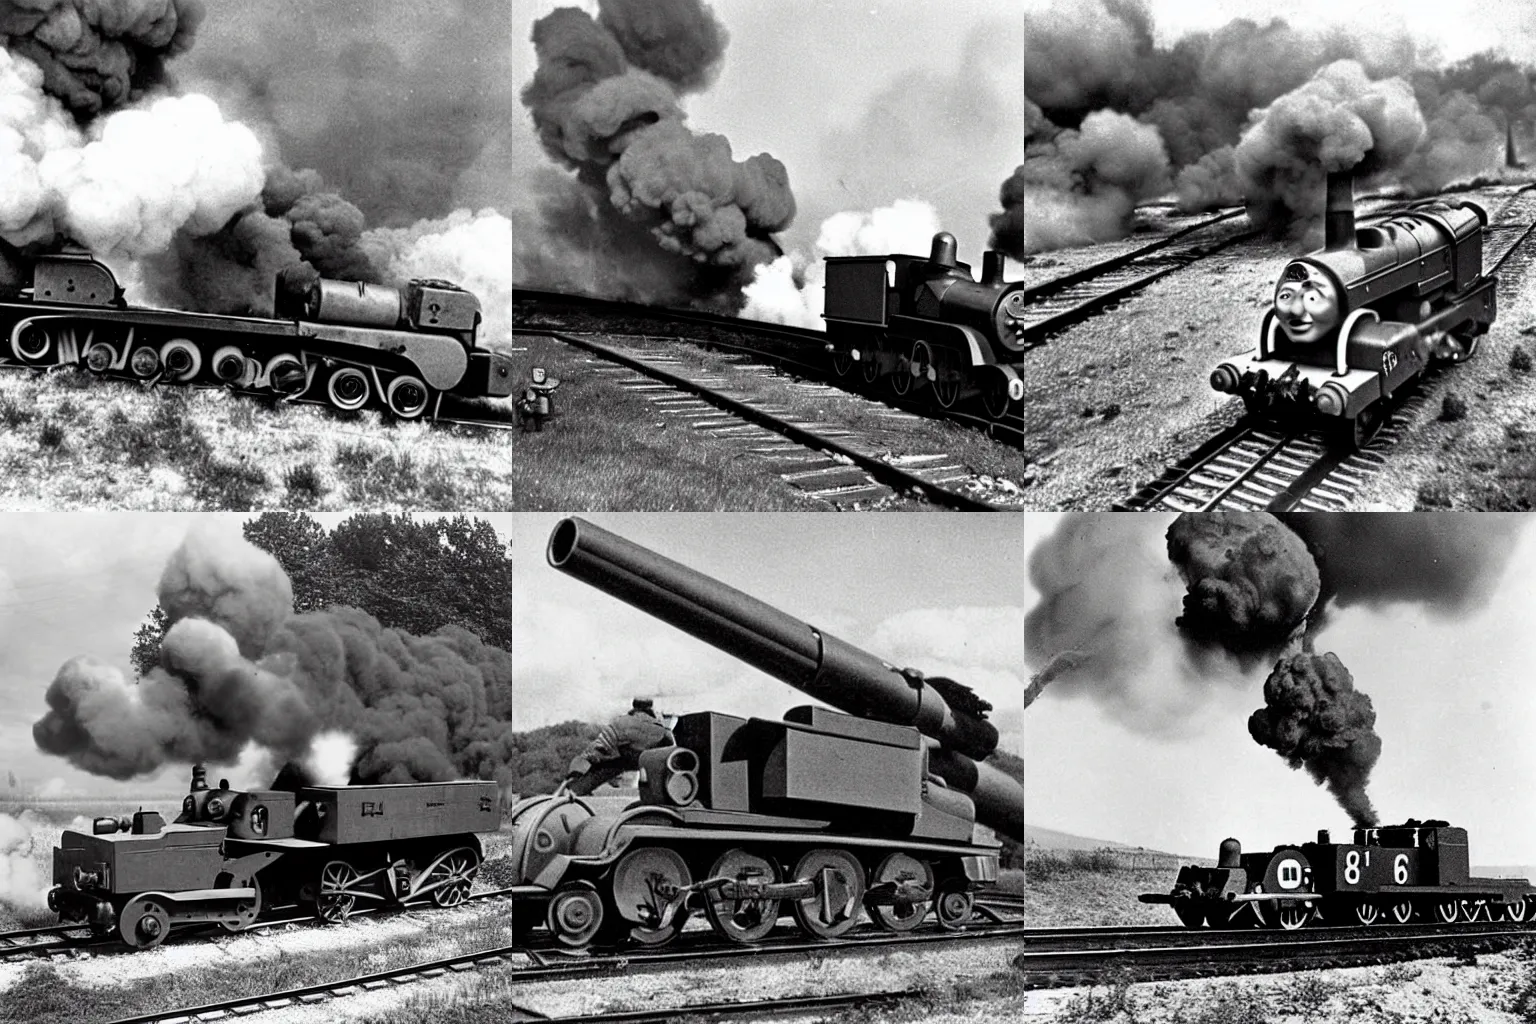 Prompt: WW2 era photograph of Thomas-tank-engine as 800mm German rail artillery Dora firing off a shot